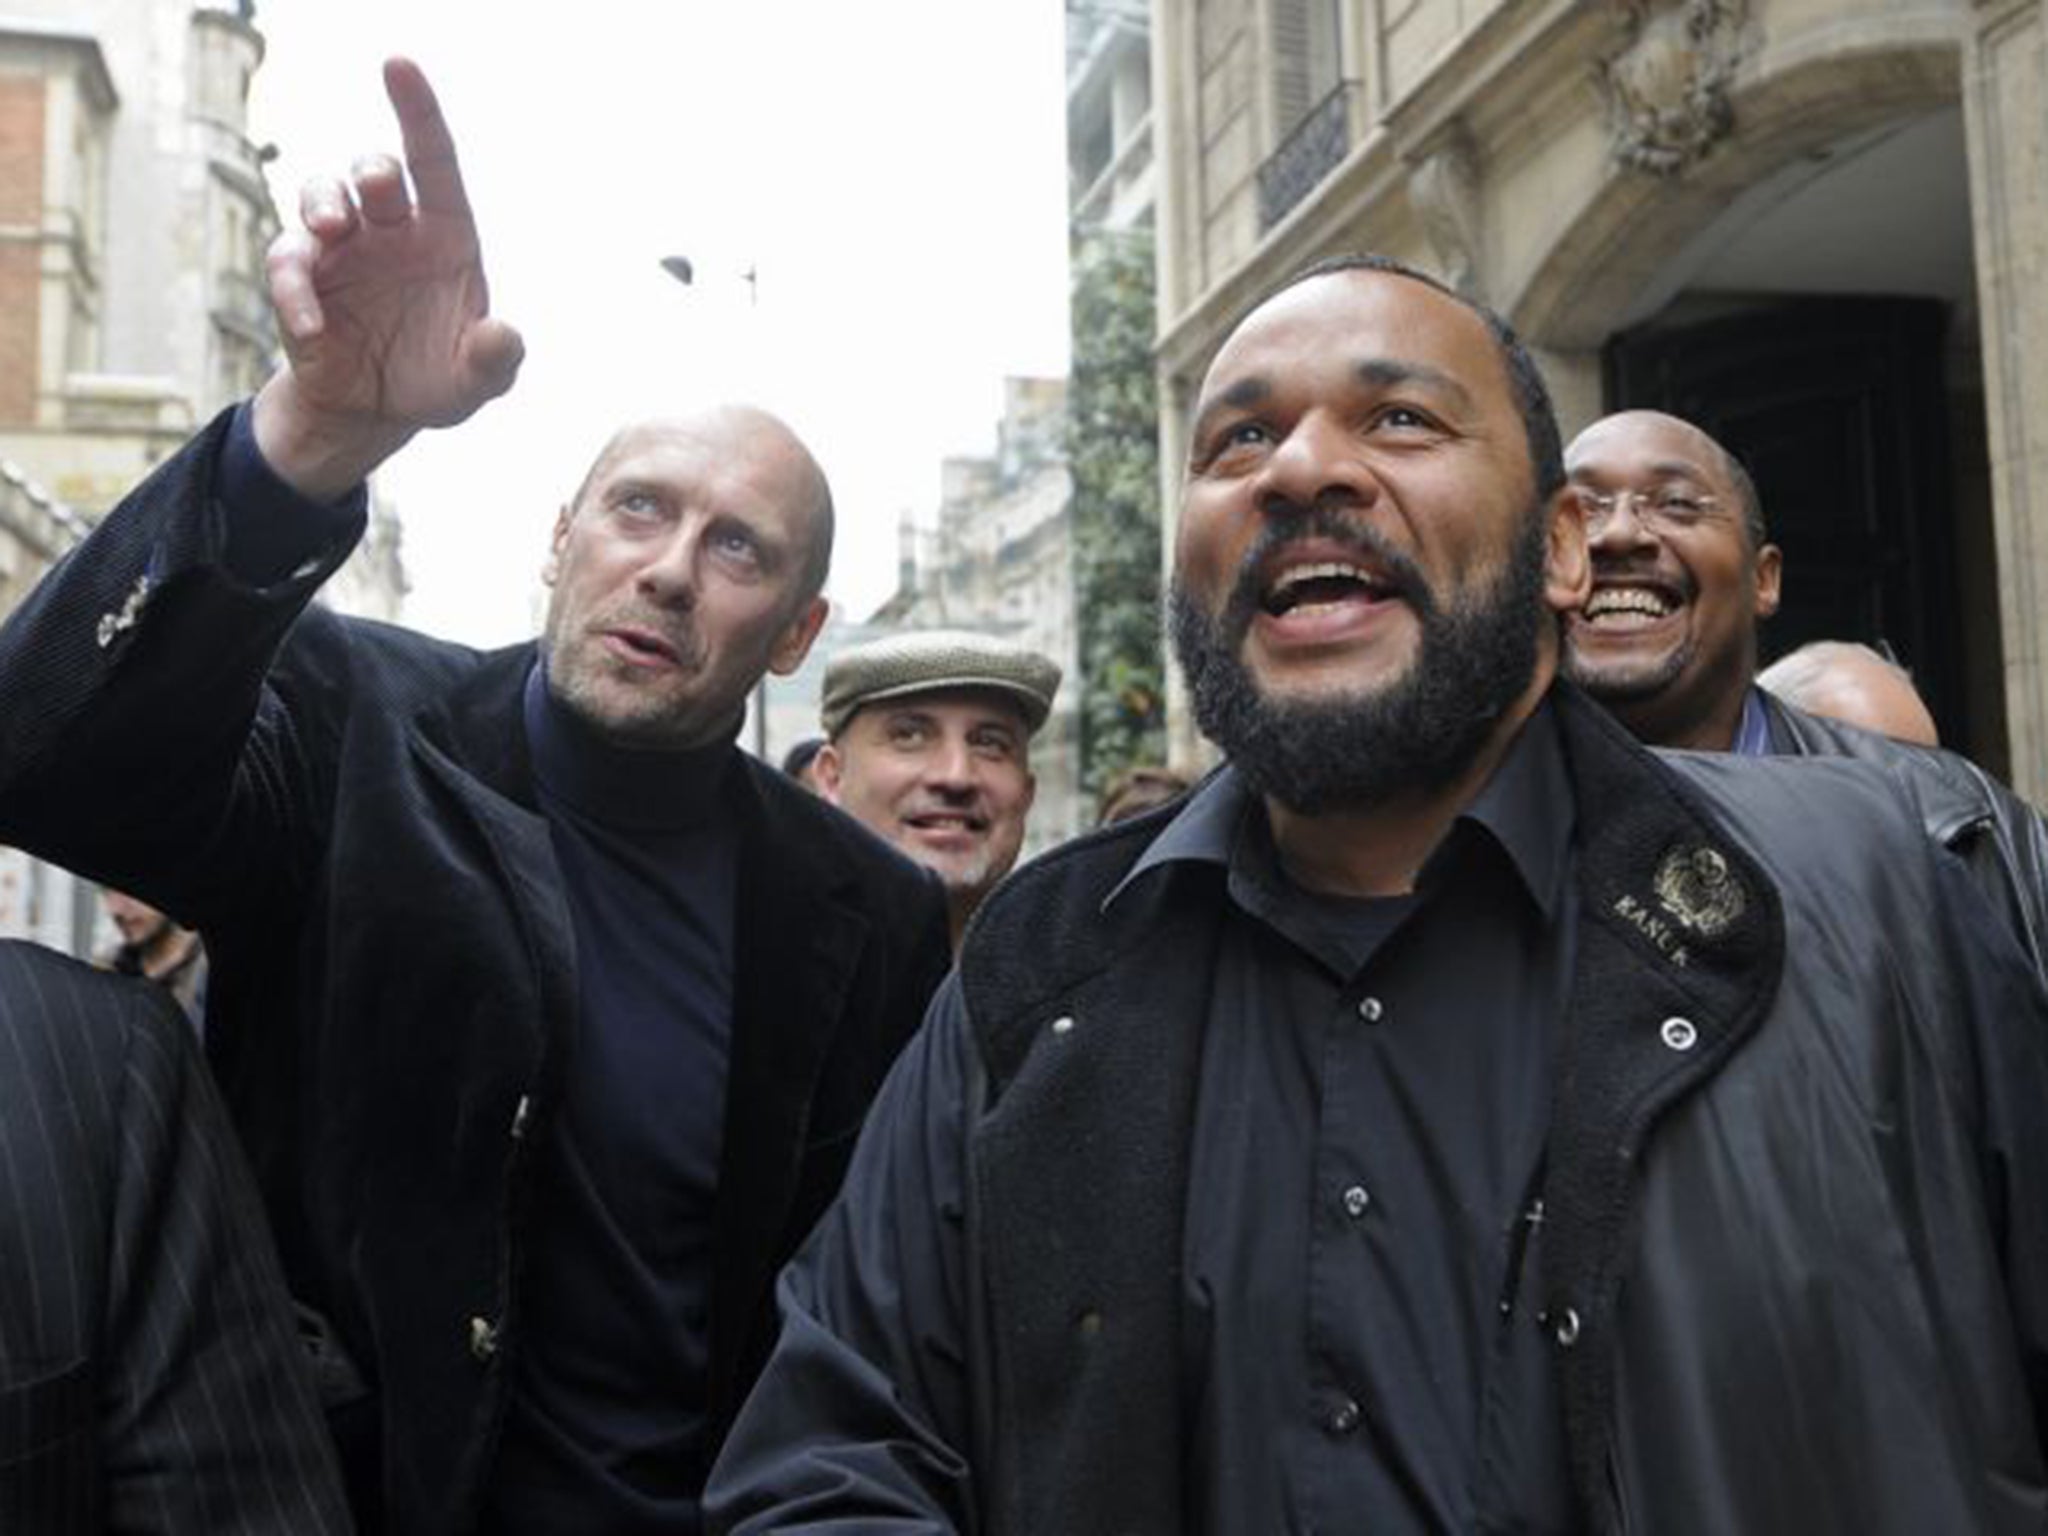 Alain Soral, left, and Dieudonné M’bala M’bala have formed a political party